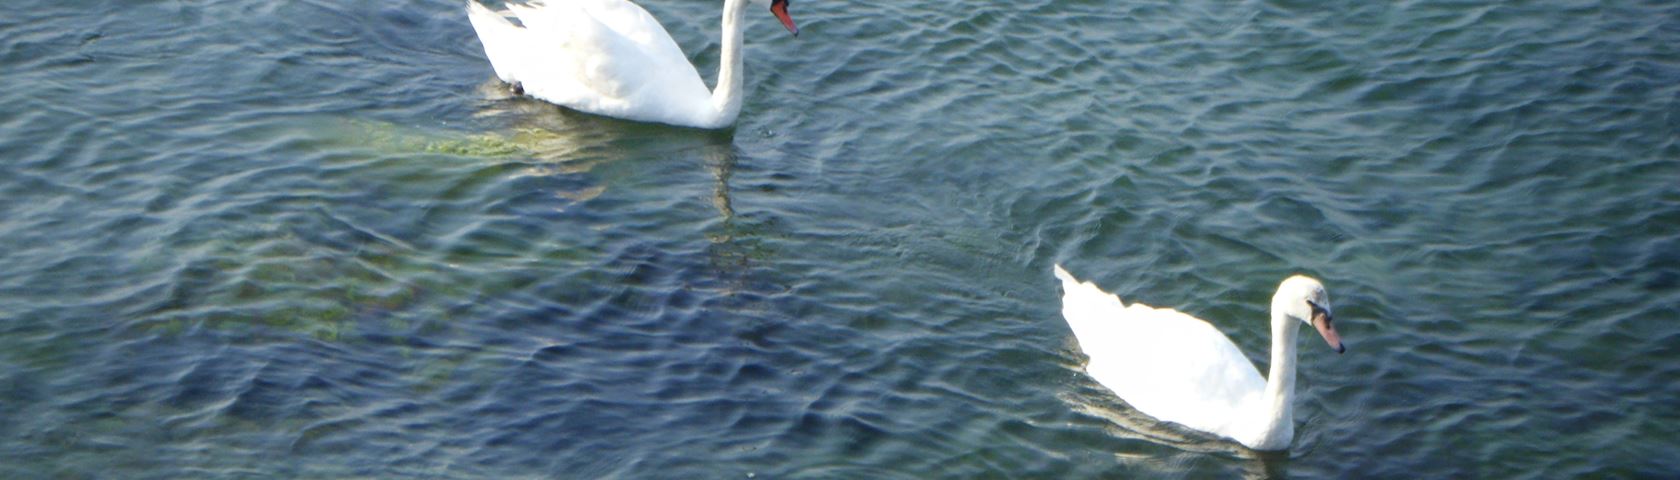 Swans on the Black Sea 2012